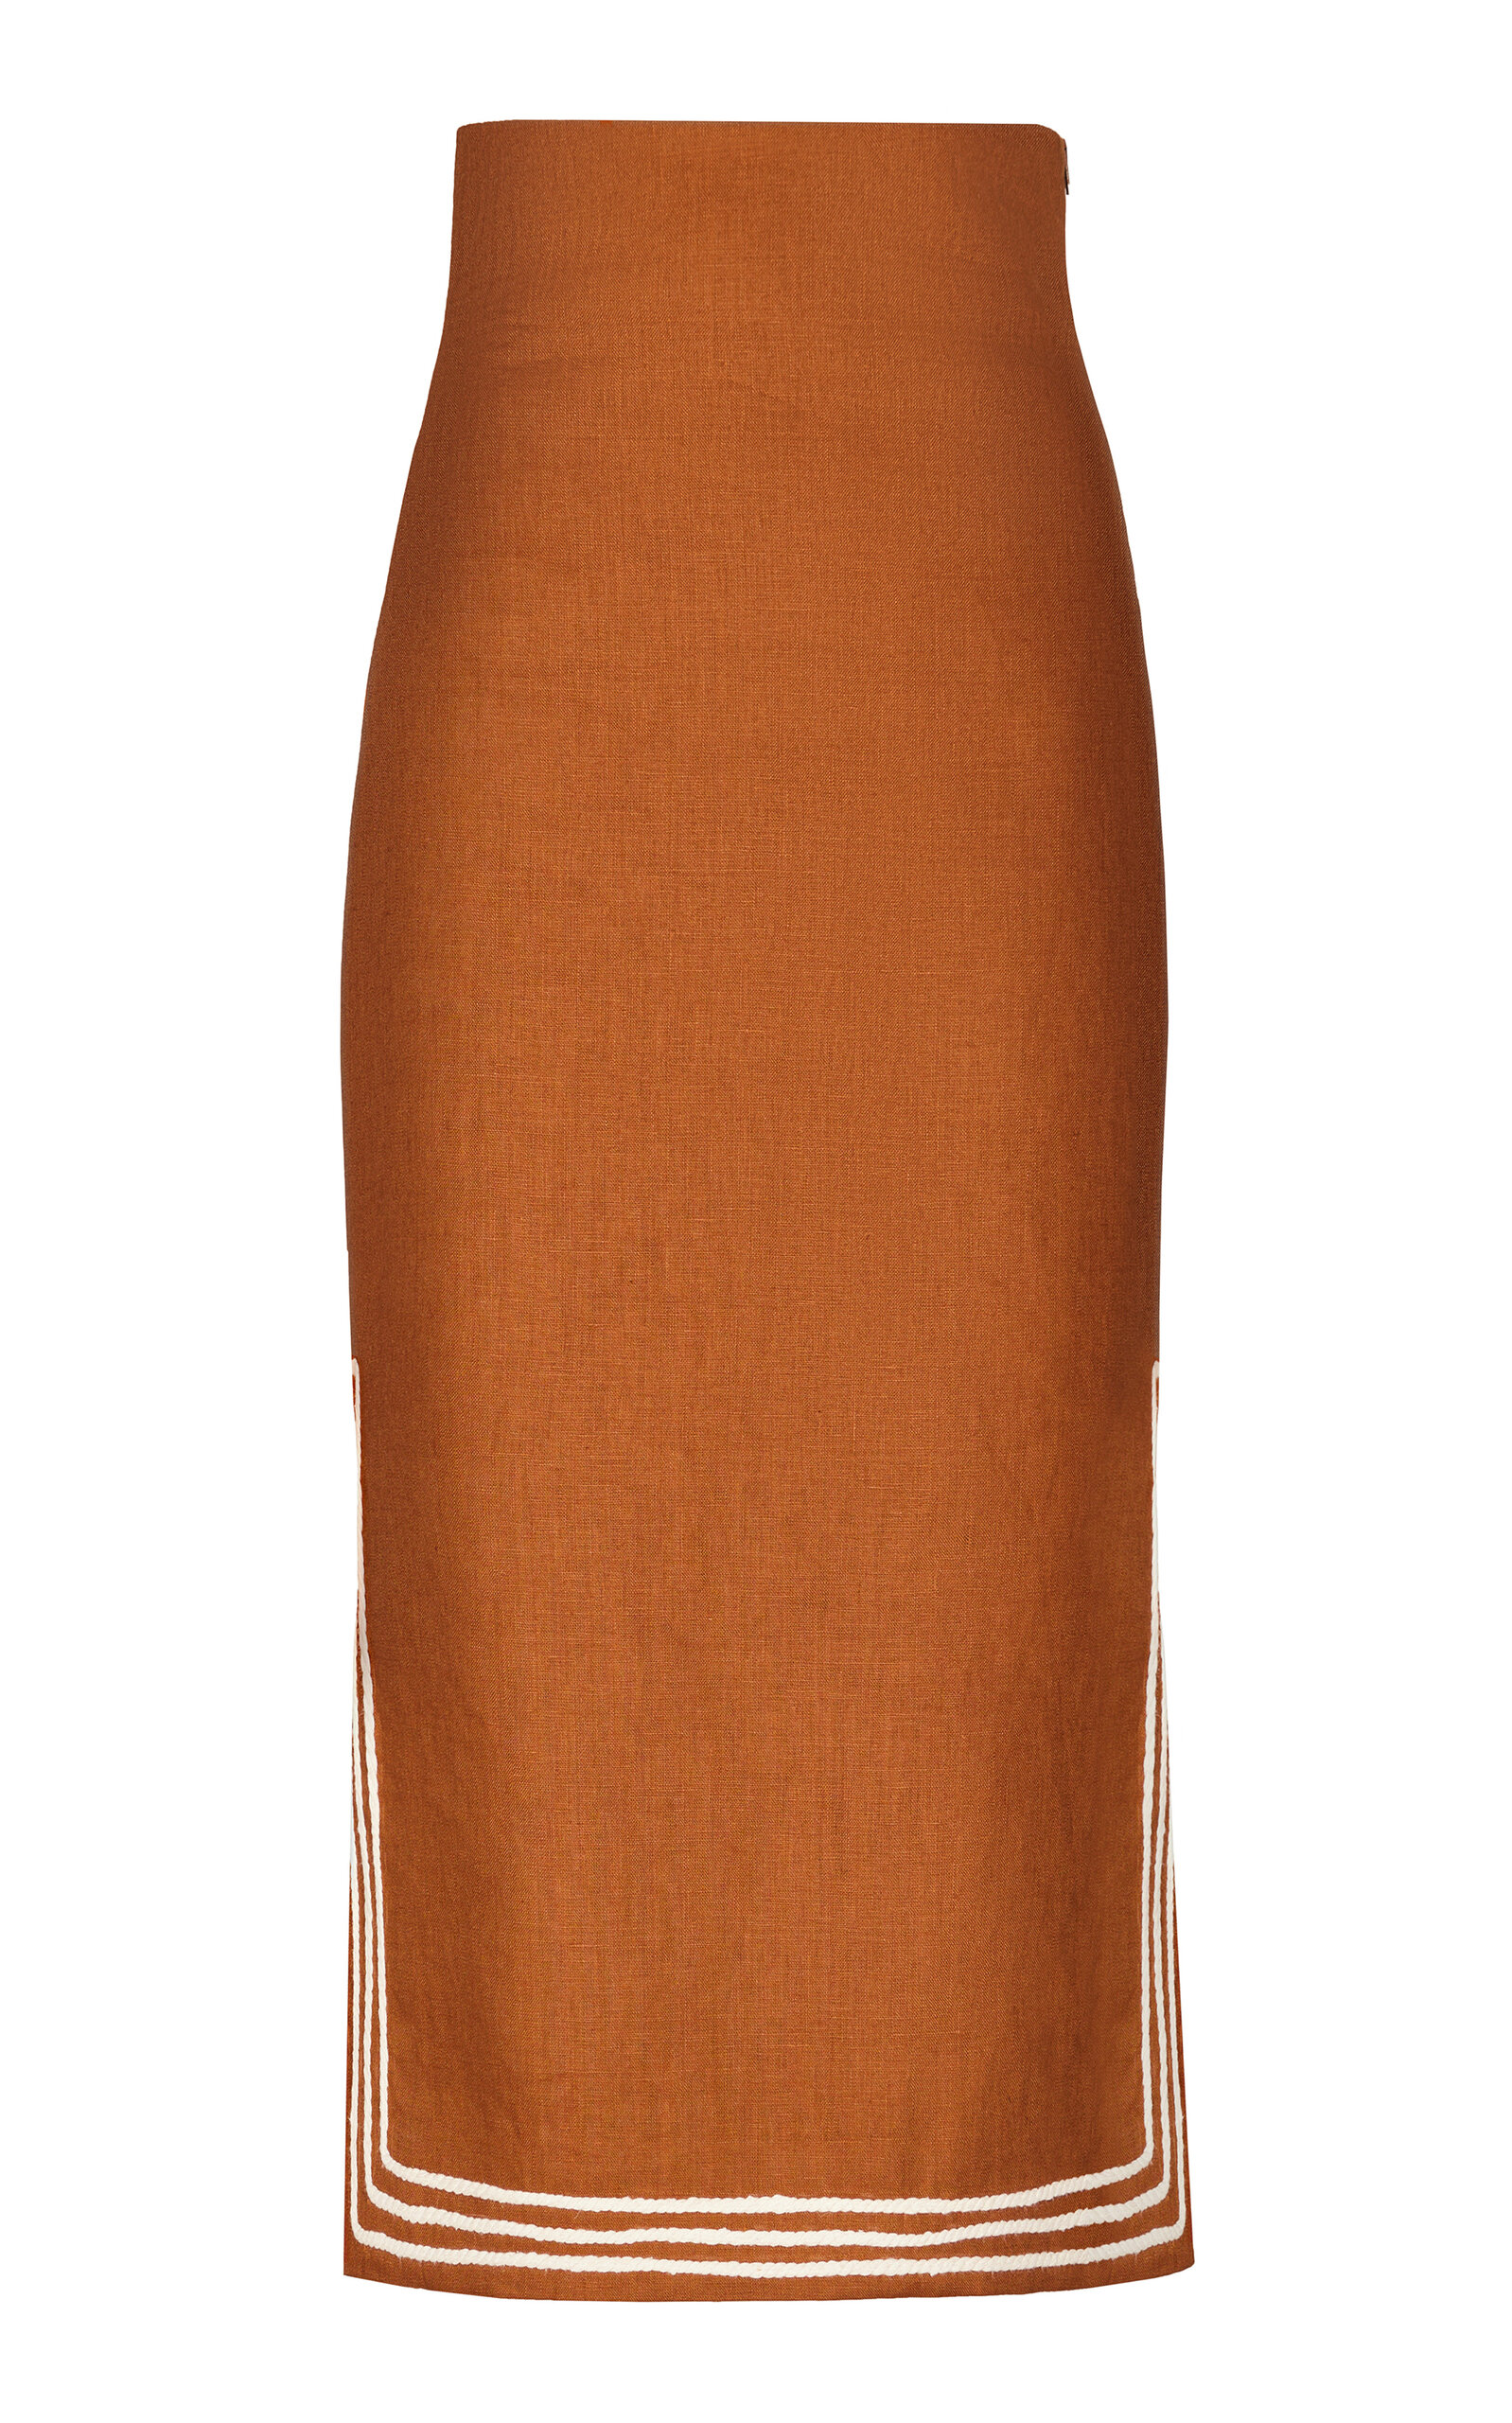 Habana Embroidered Linen Midi Skirt